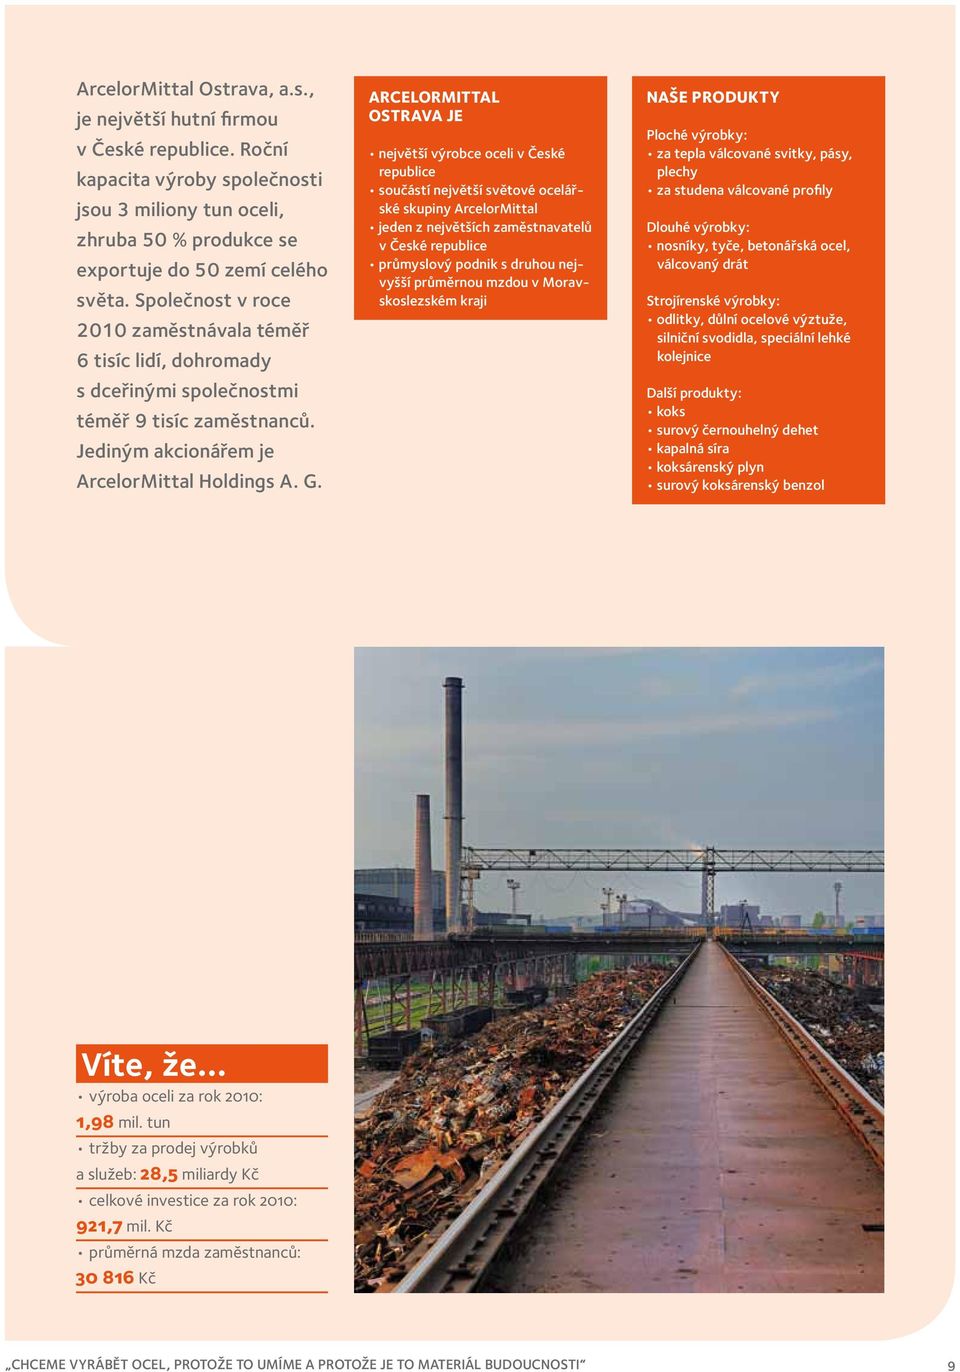 ArcelorMittal Ostrava je největší výrobce oceli v České republice součástí největší světové ocelářské skupiny ArcelorMittal jeden z největších zaměstnavatelů v České republice průmyslový podnik s